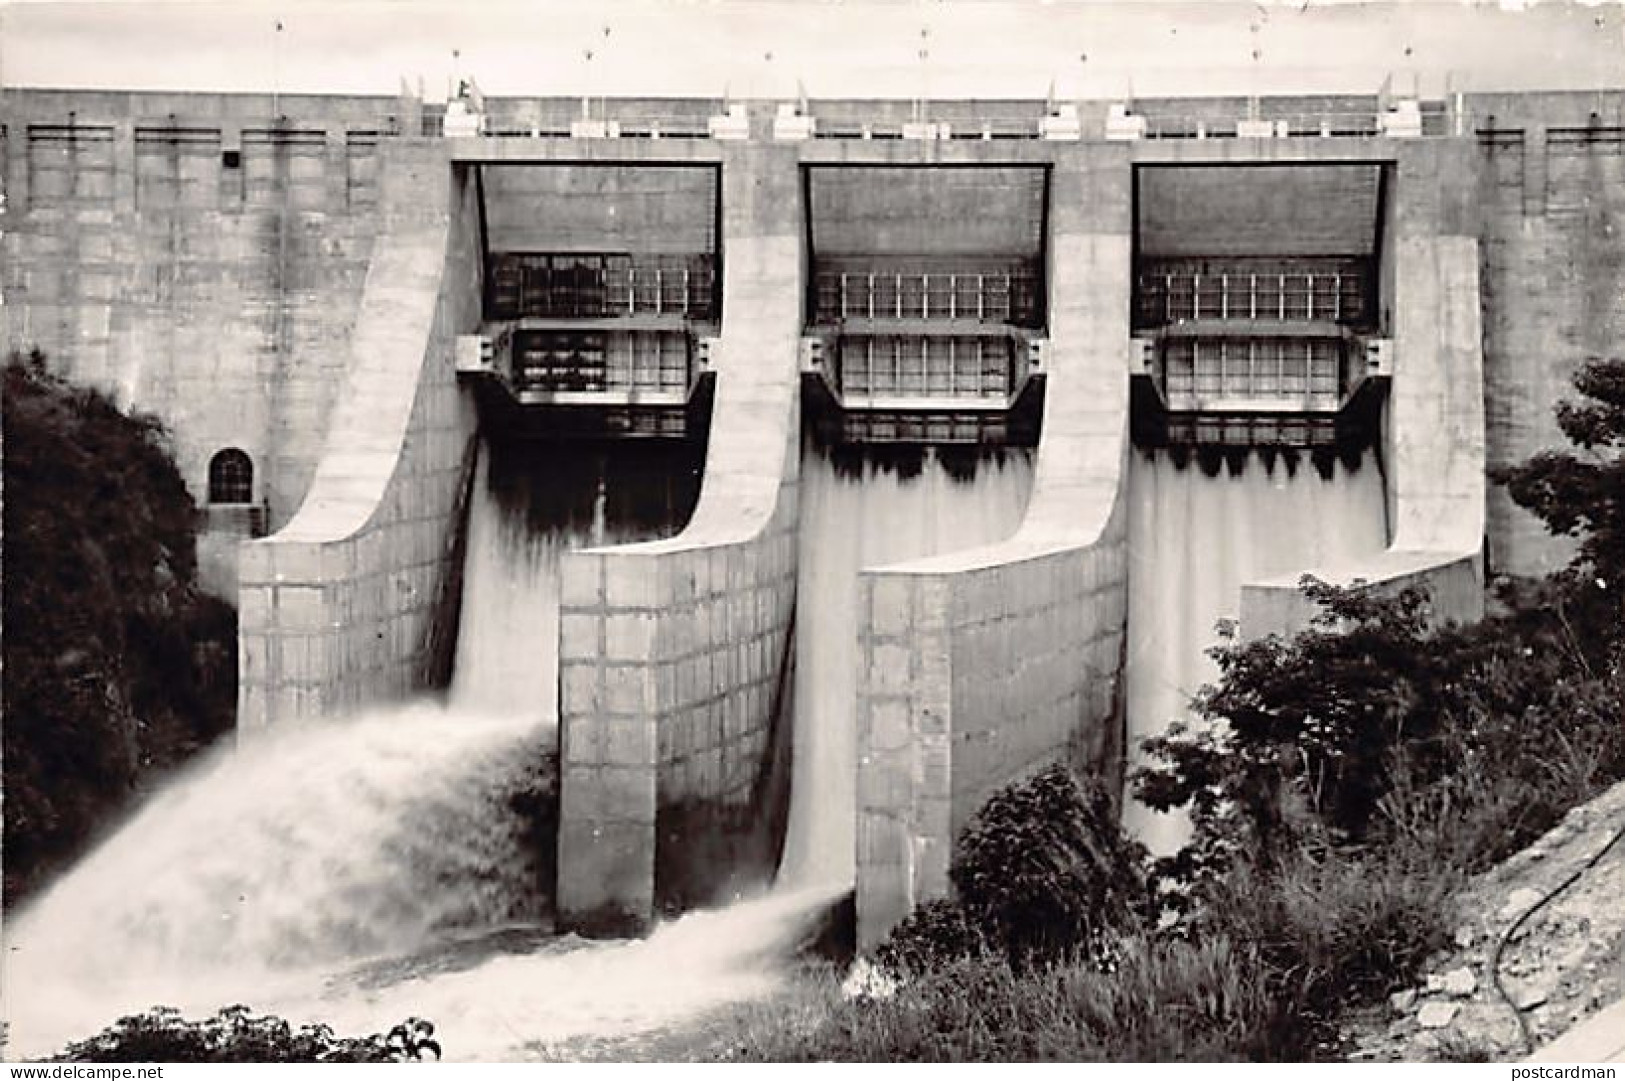 Angola - MABUBAS - Cap. Teofilo Duarte Dam - Publ. Direcçao Dos Serviços De Economica  - Angola